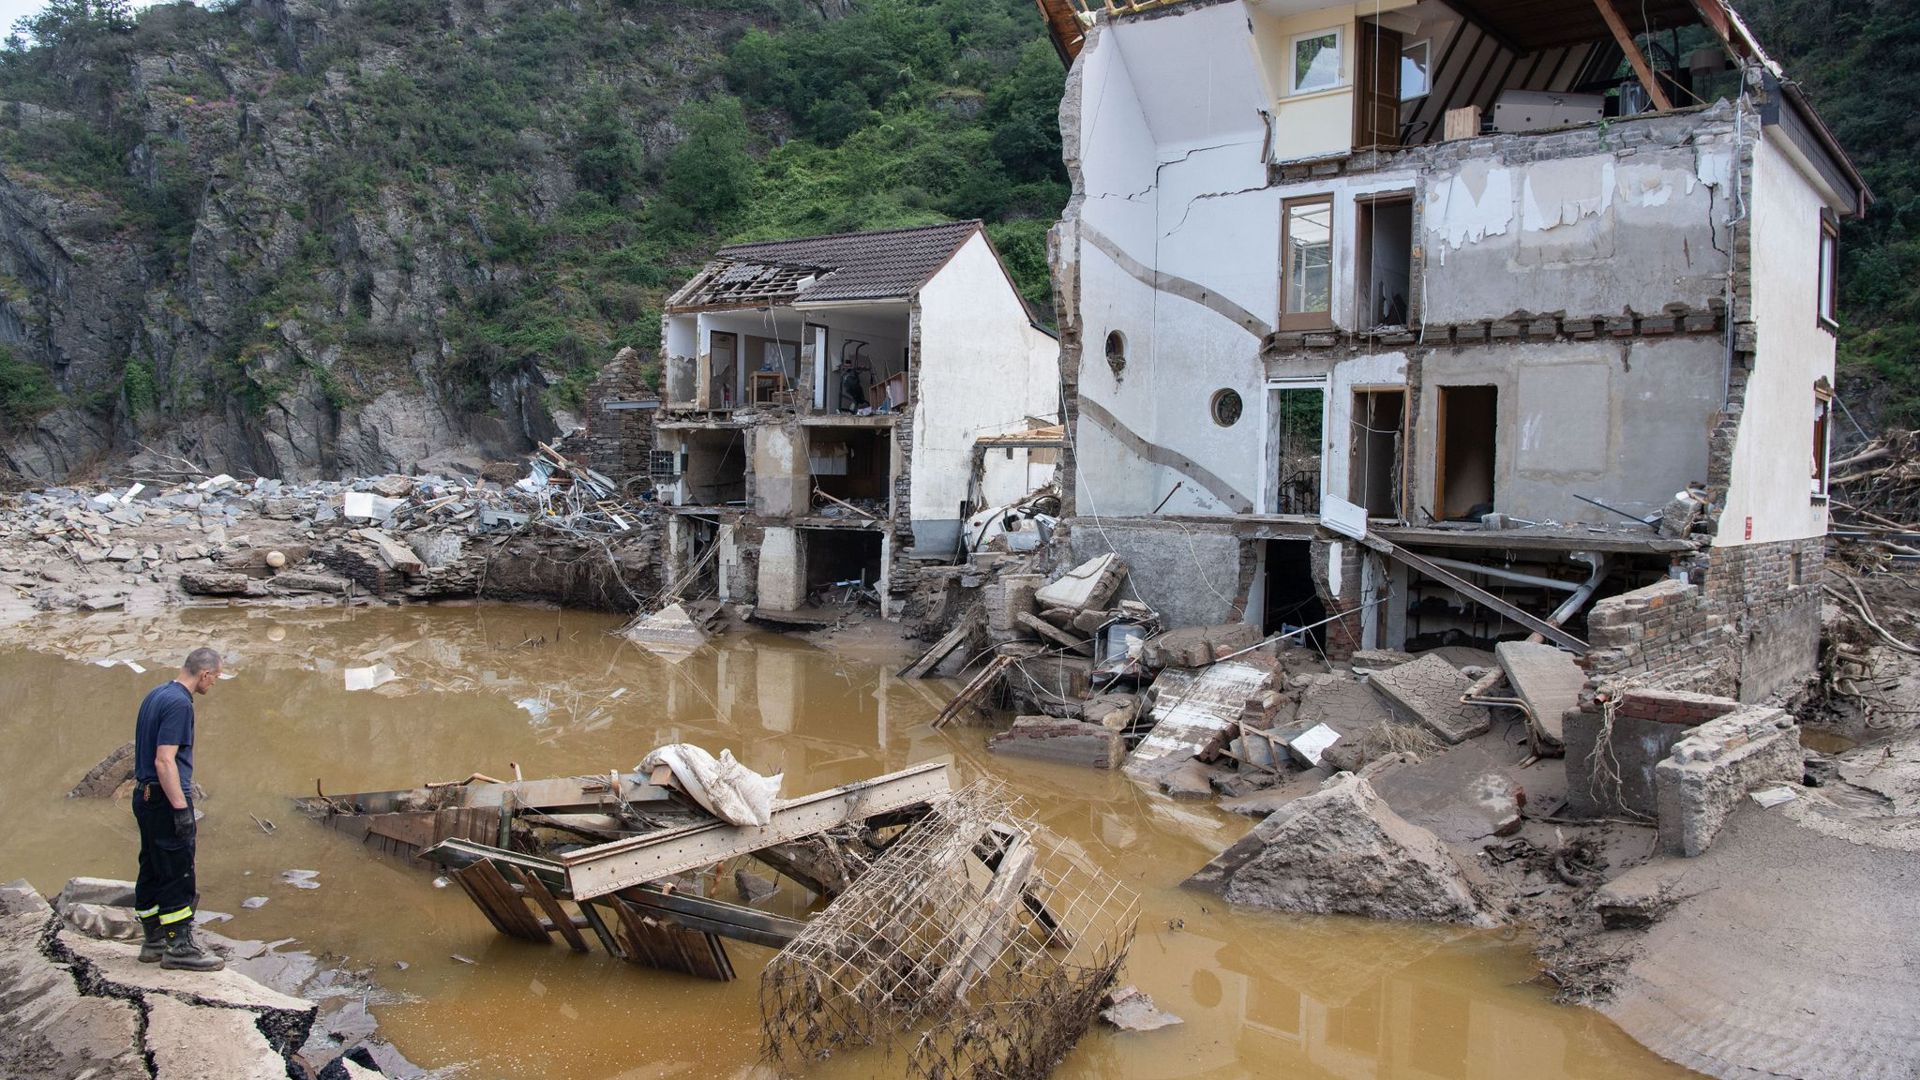 Ein nach der Hochwasserkatastrophe völlig zerstörtes Haus im rheinland-pfälzischen Mayschoß.